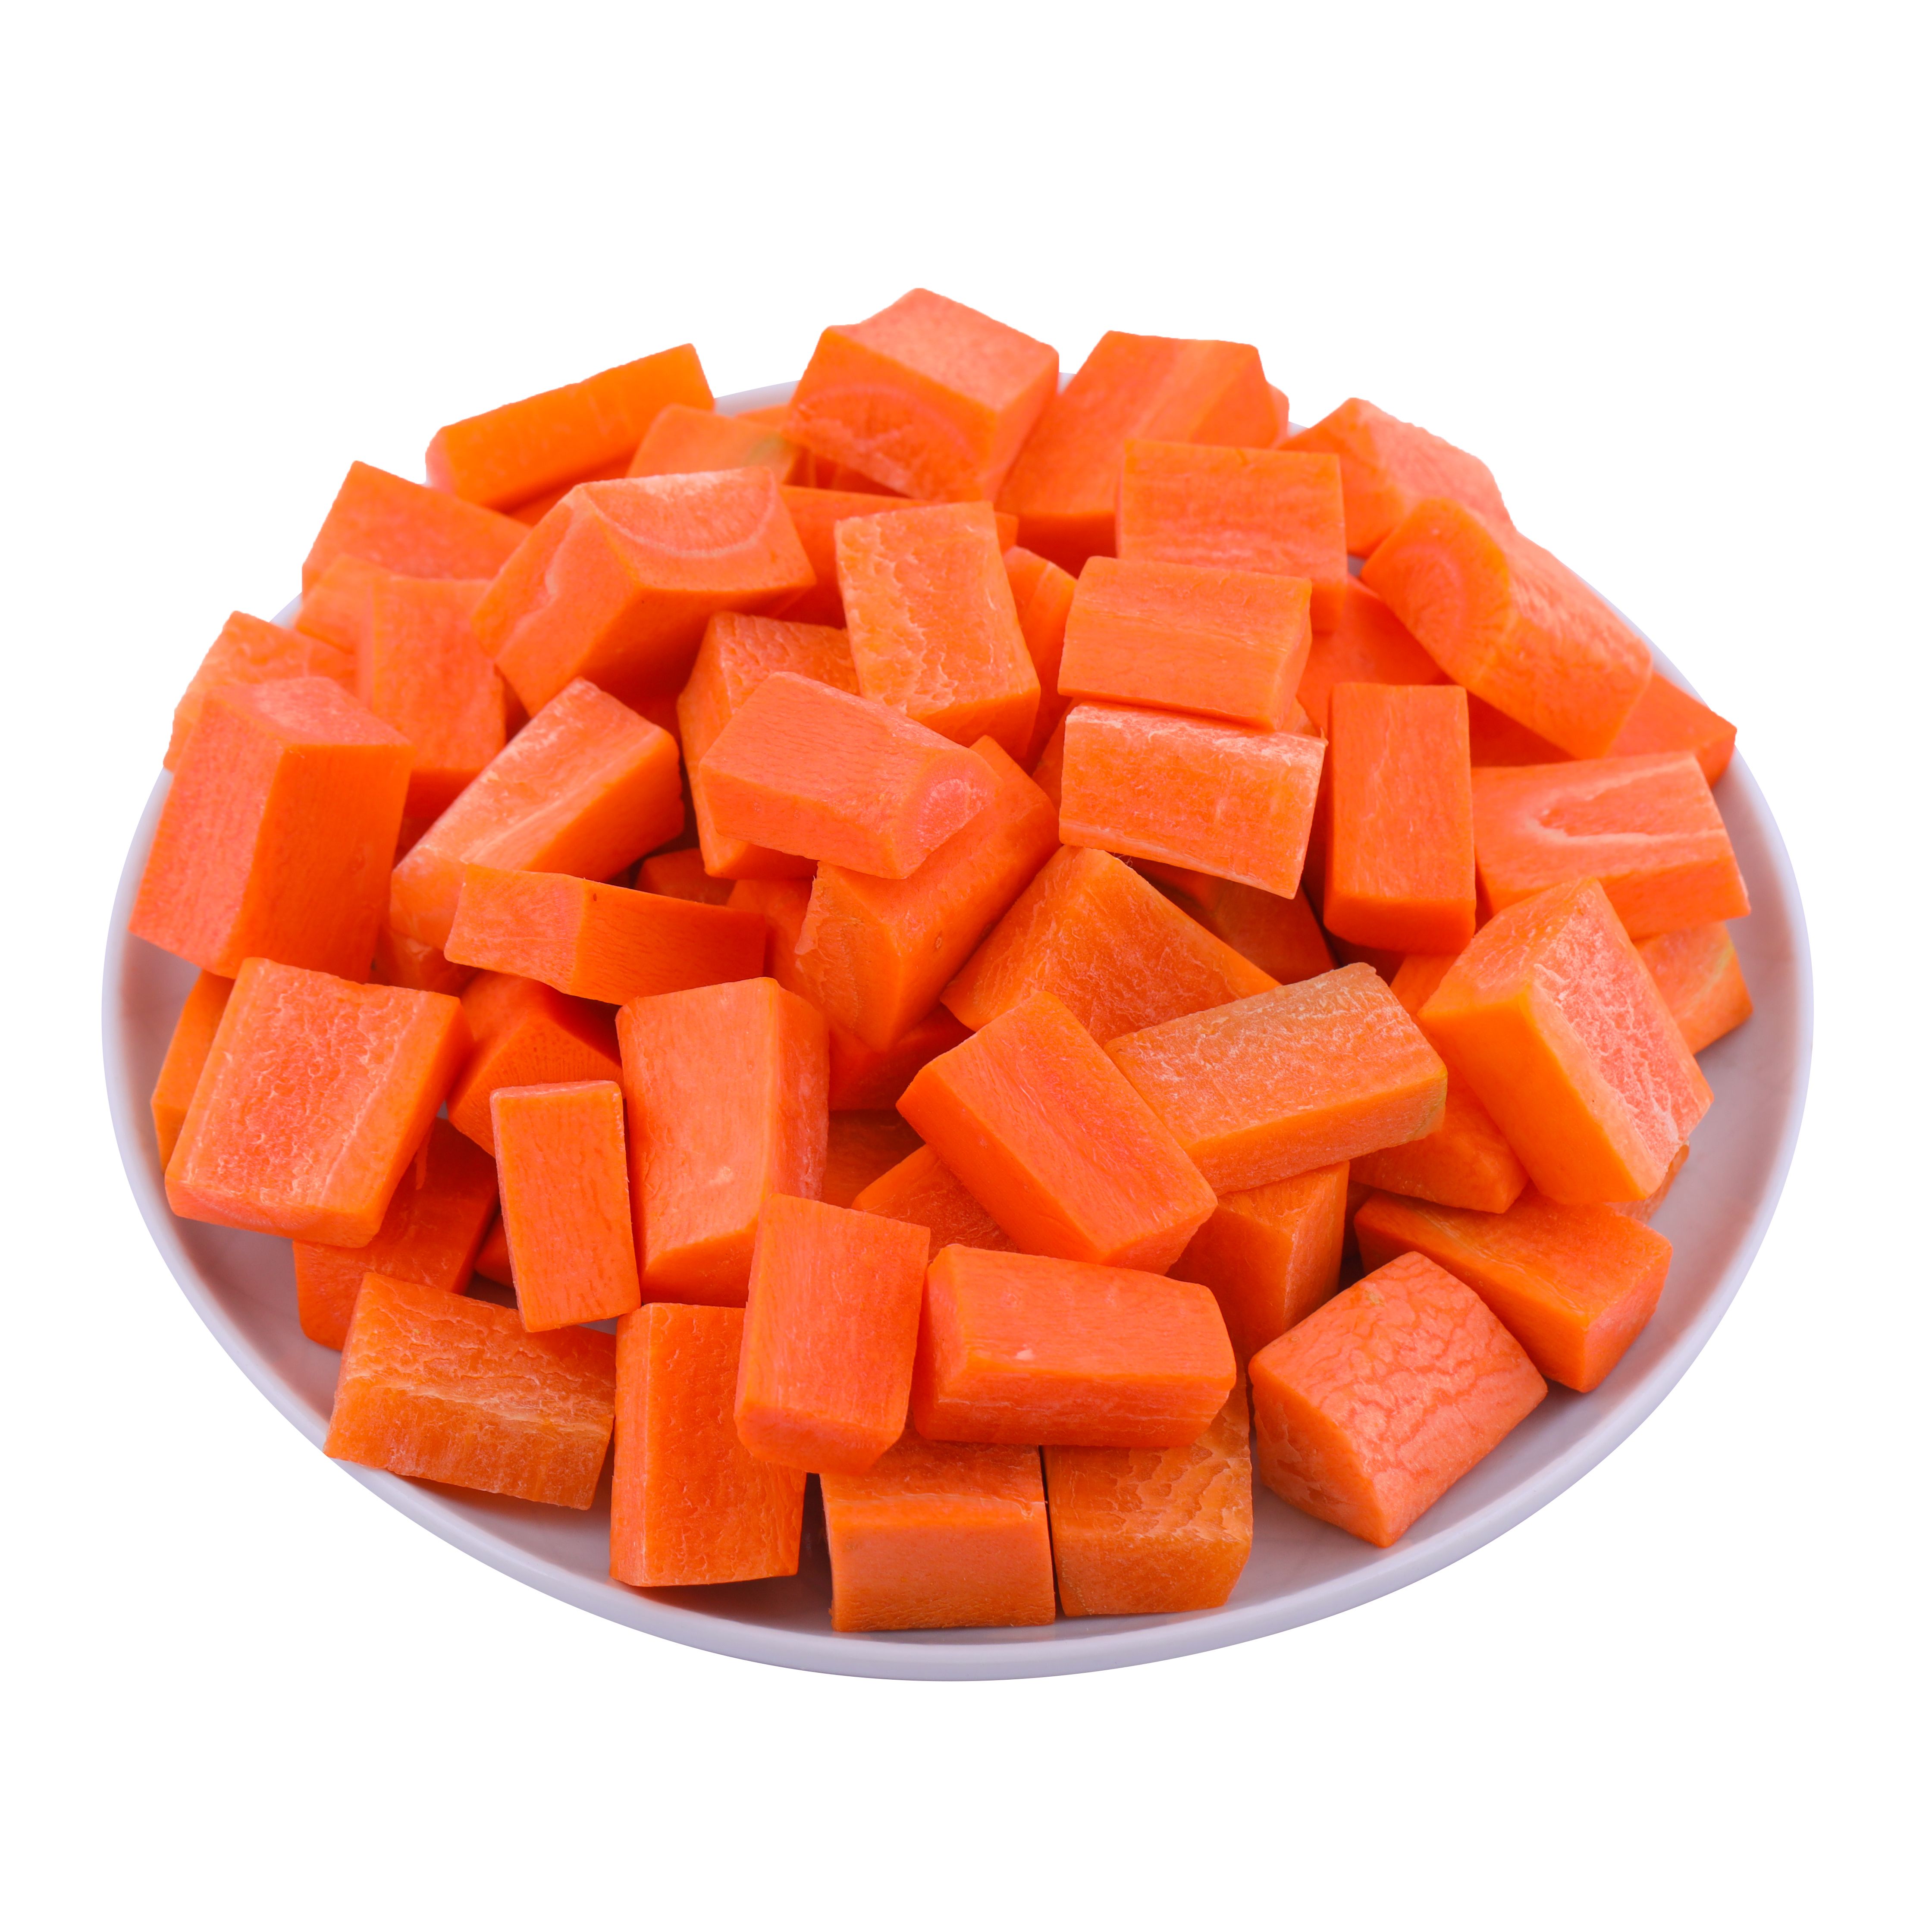 carrot_cubes.jpg